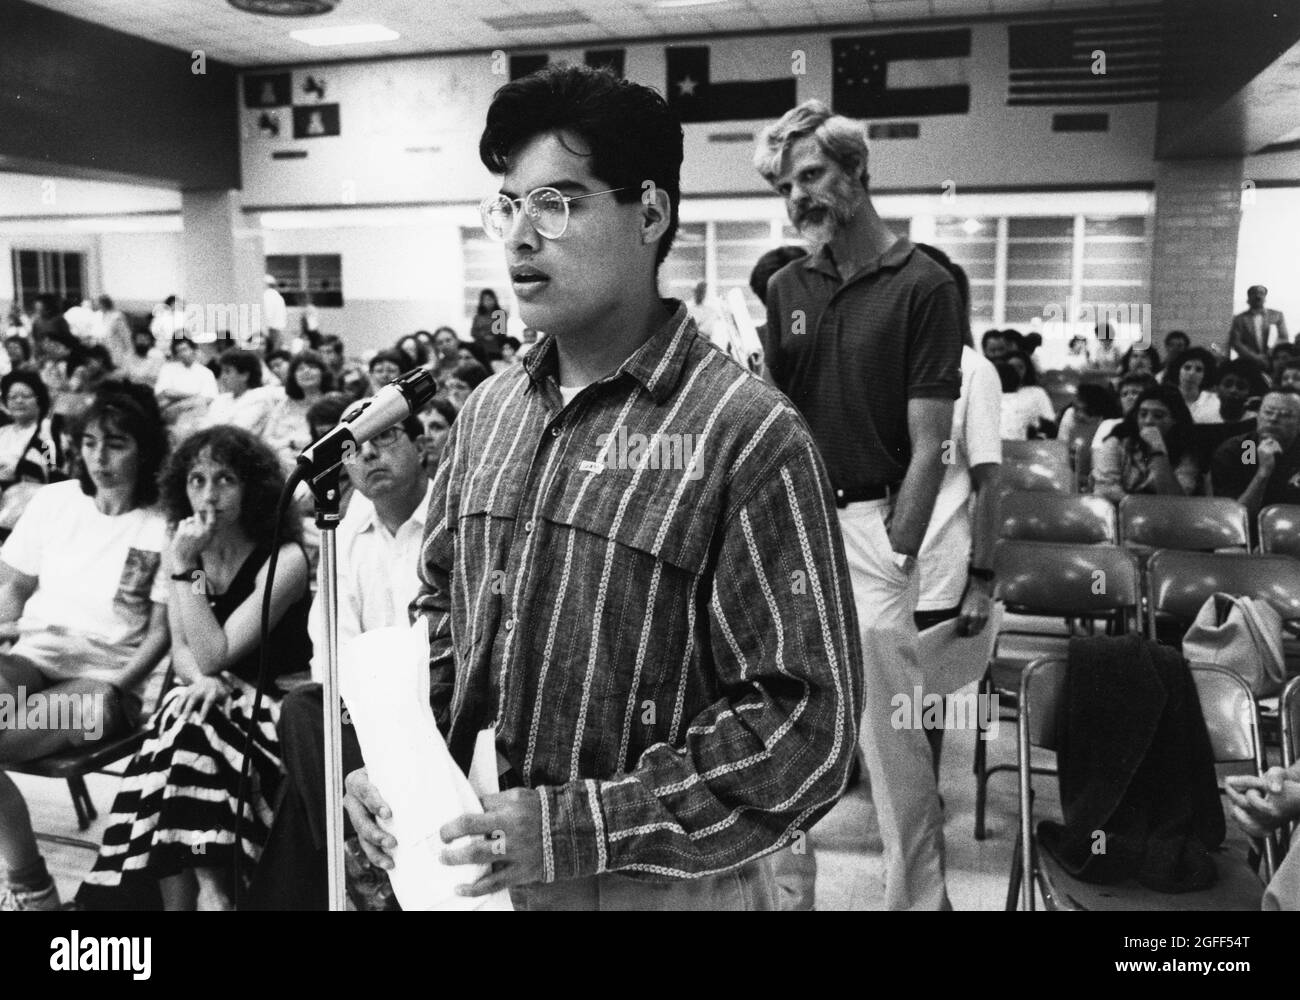 Austin Texas USA, um 1991: High School Student spricht bei der Anhörung an der Schulbank, um sich der möglichen Schließung ihrer High School zu widersetzen. Datei EV3-0220 no mr ©Bob Daemmrich Stockfoto